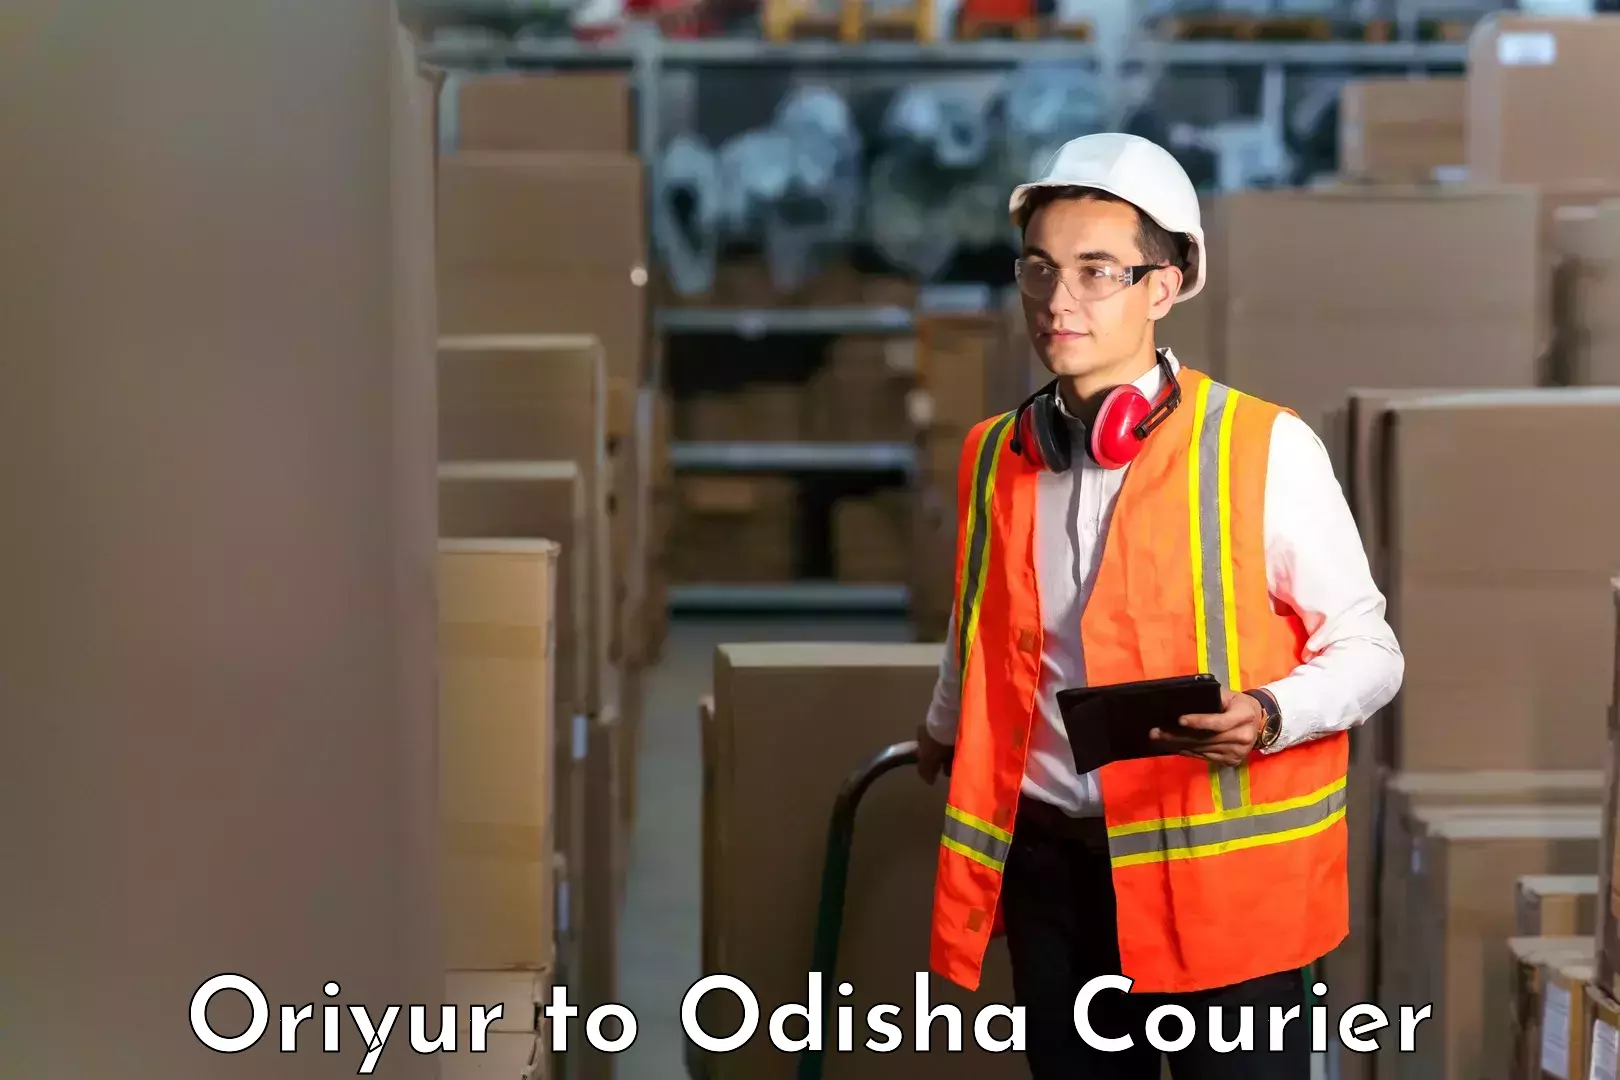 Courier app Oriyur to Bargarh